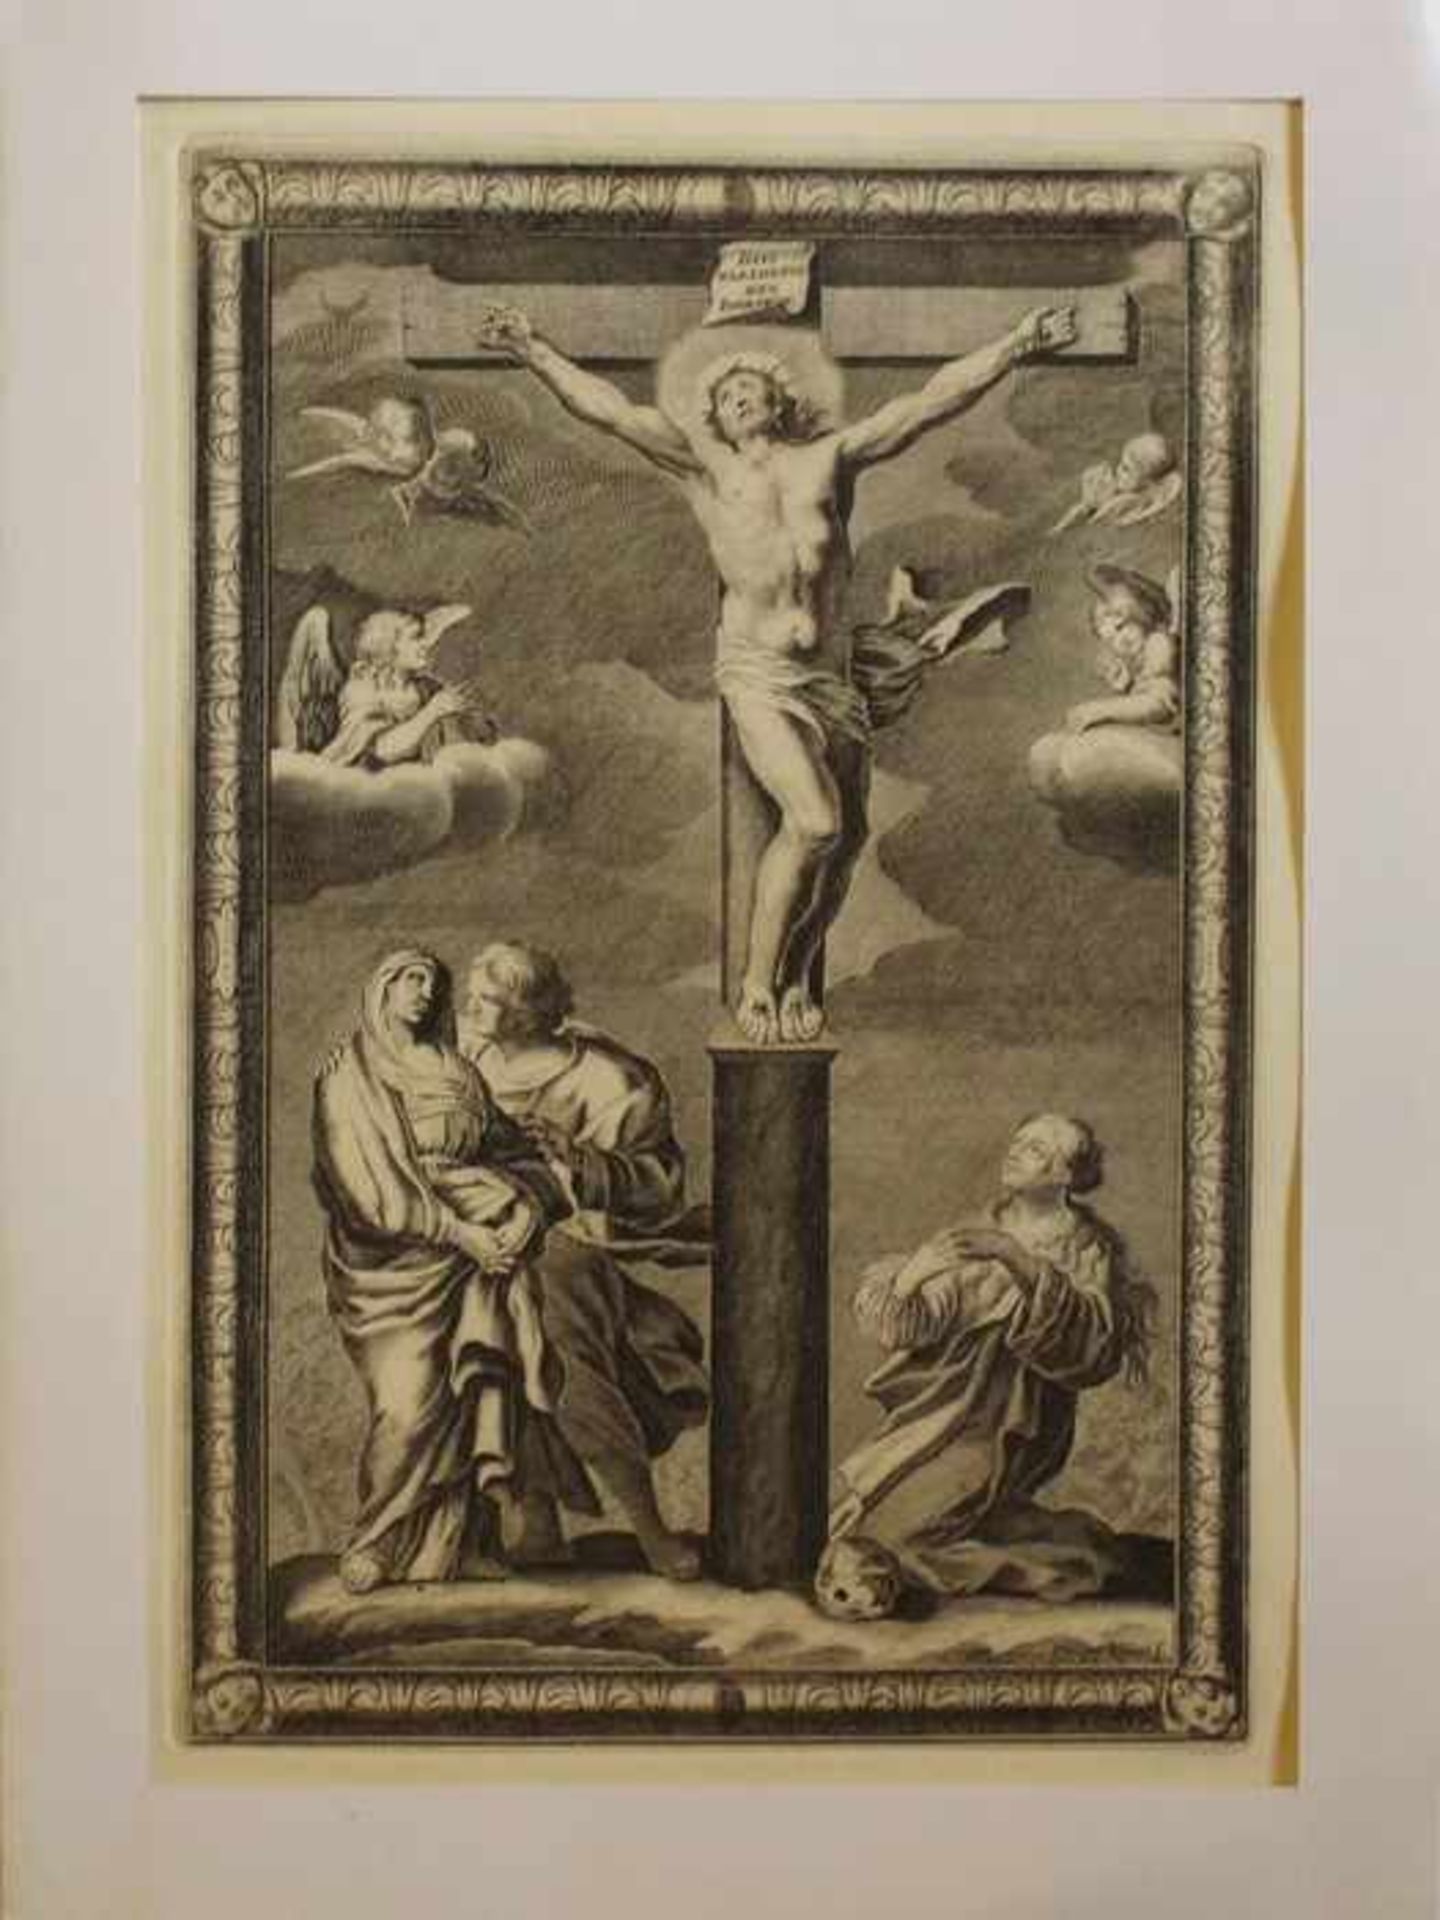 Kilian, Philipp1714 - 1759 Augsburg, Kreuzigung Jesu, großfiguriger Kupferstich, li. Johannes und